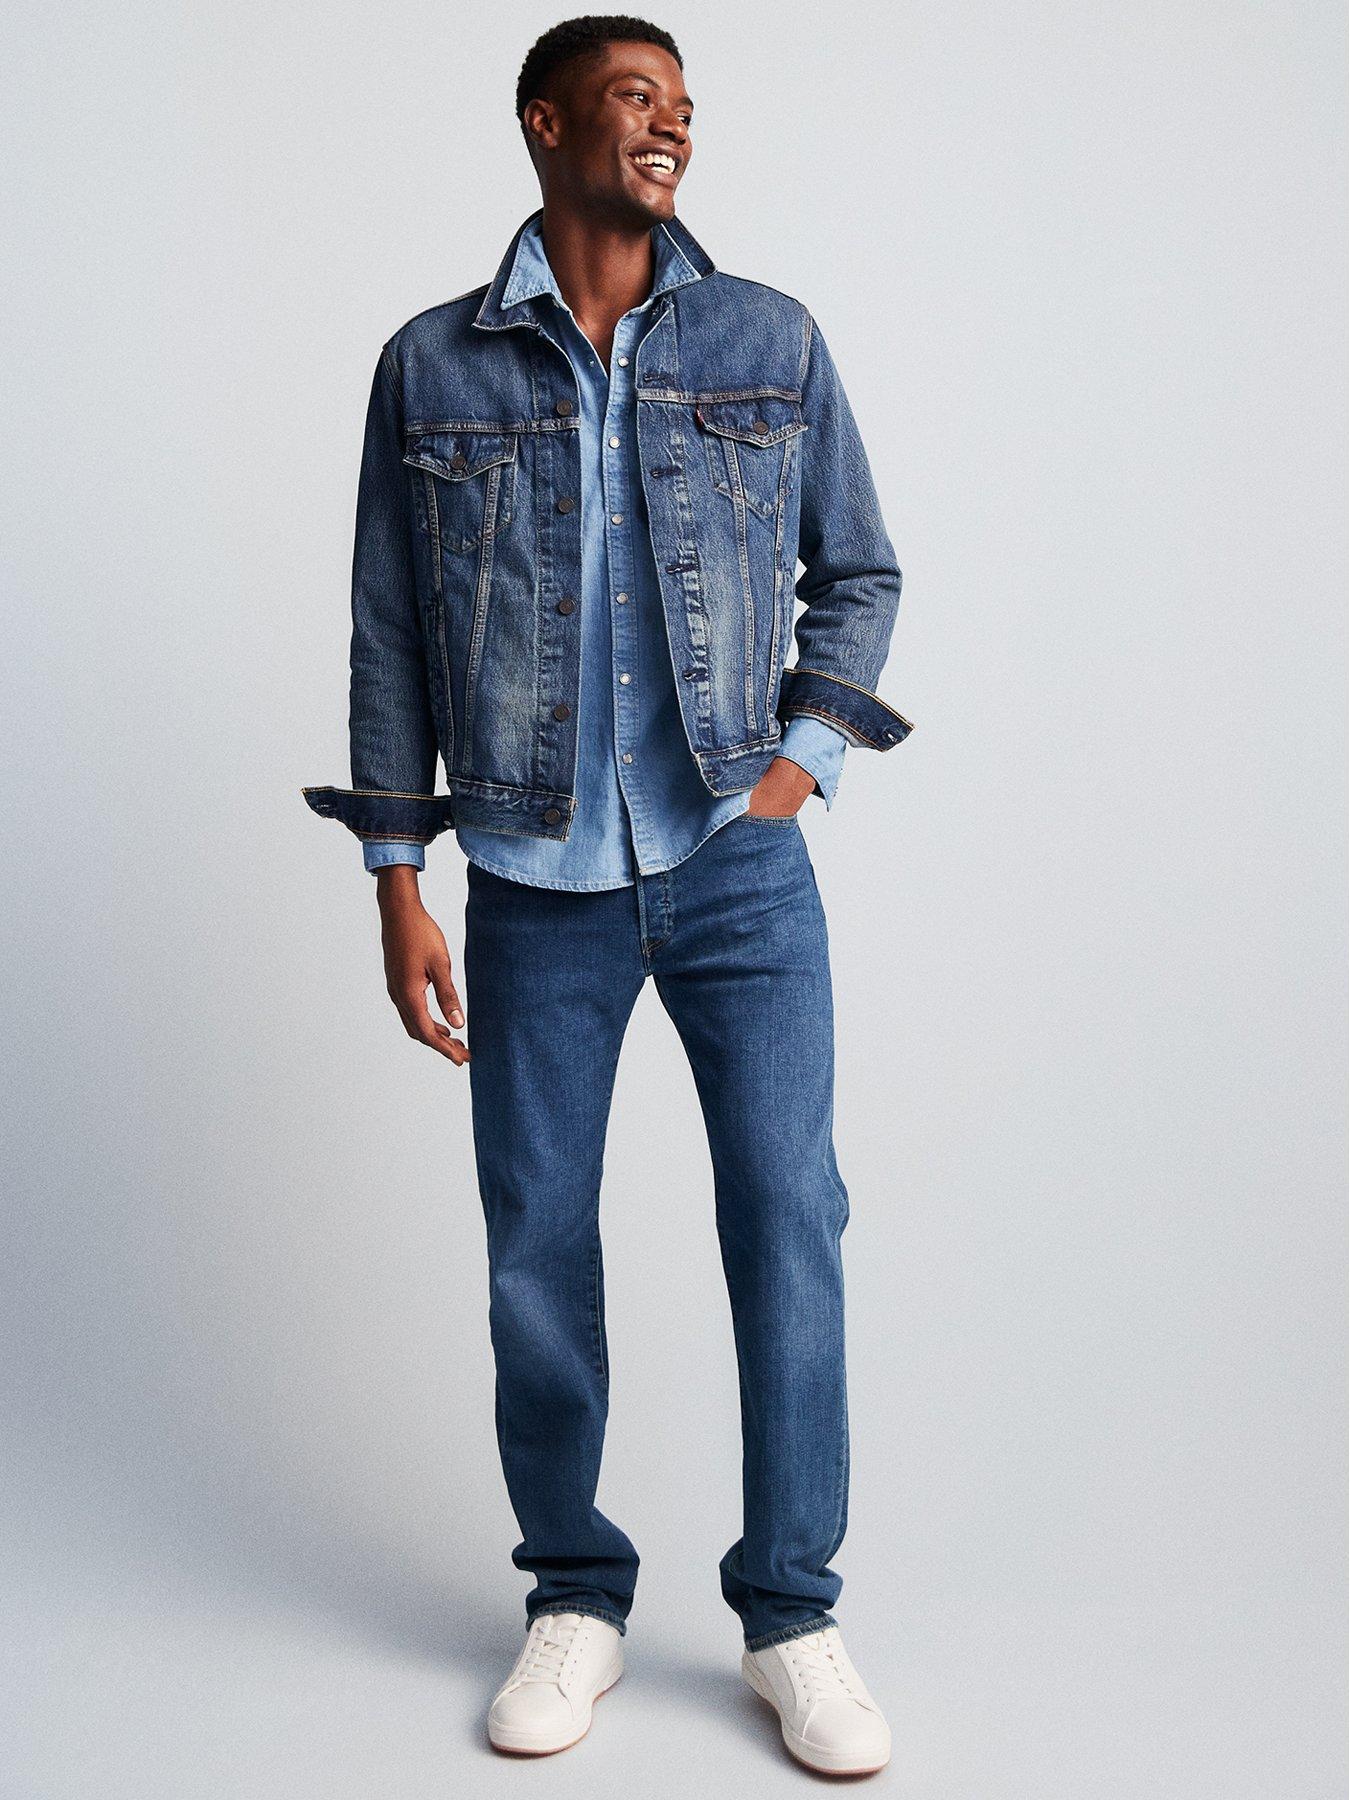 levis 501 original fit jeans